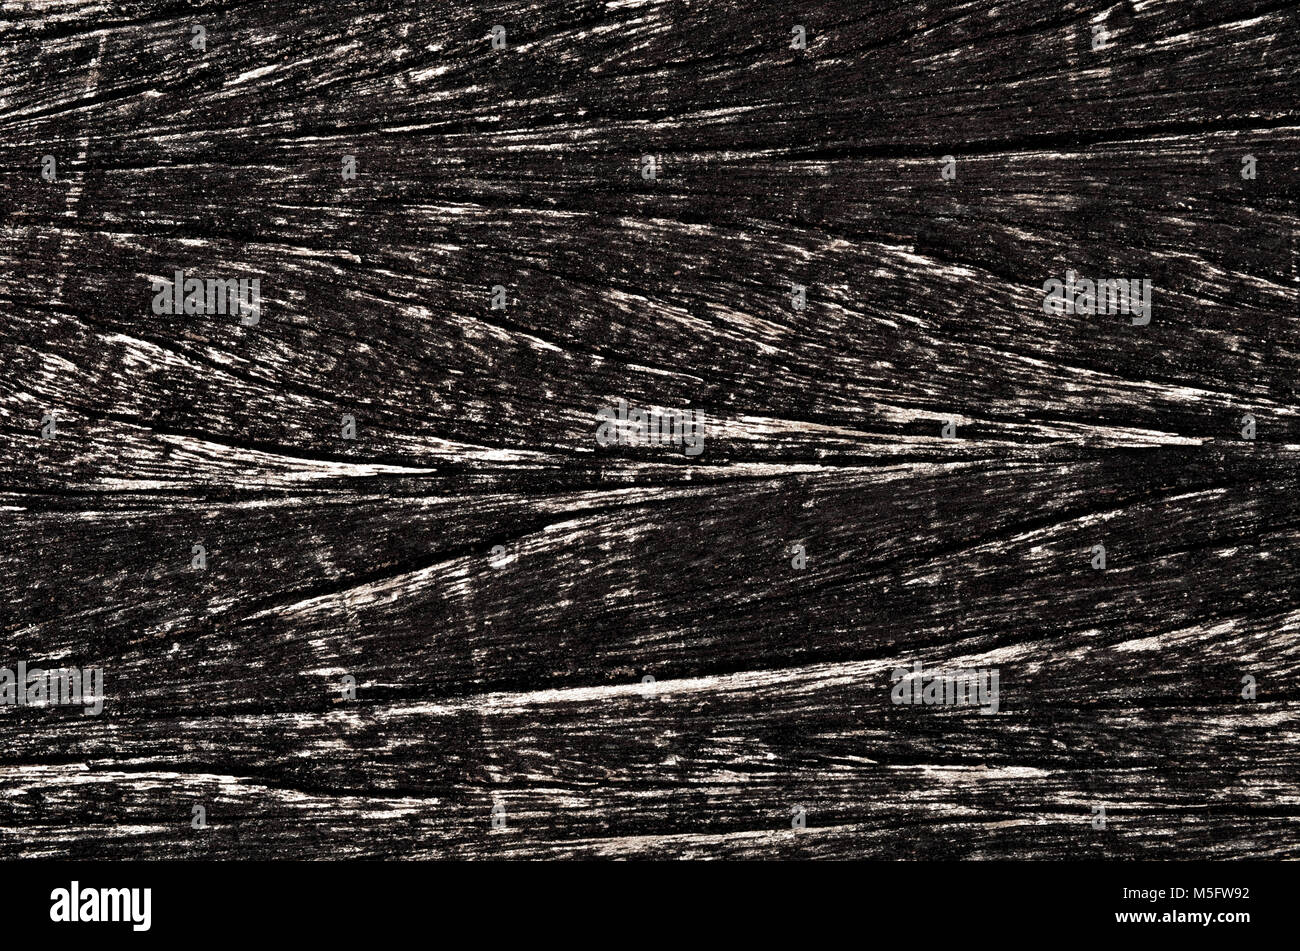 Grunge Textur Fleck auf altem Holz Platte, Nahaufnahme foto Bild von Grunge Textur auf ein altes Holz platte Fleck vorhanden ein Detail der Textur und des Musters Stockfoto